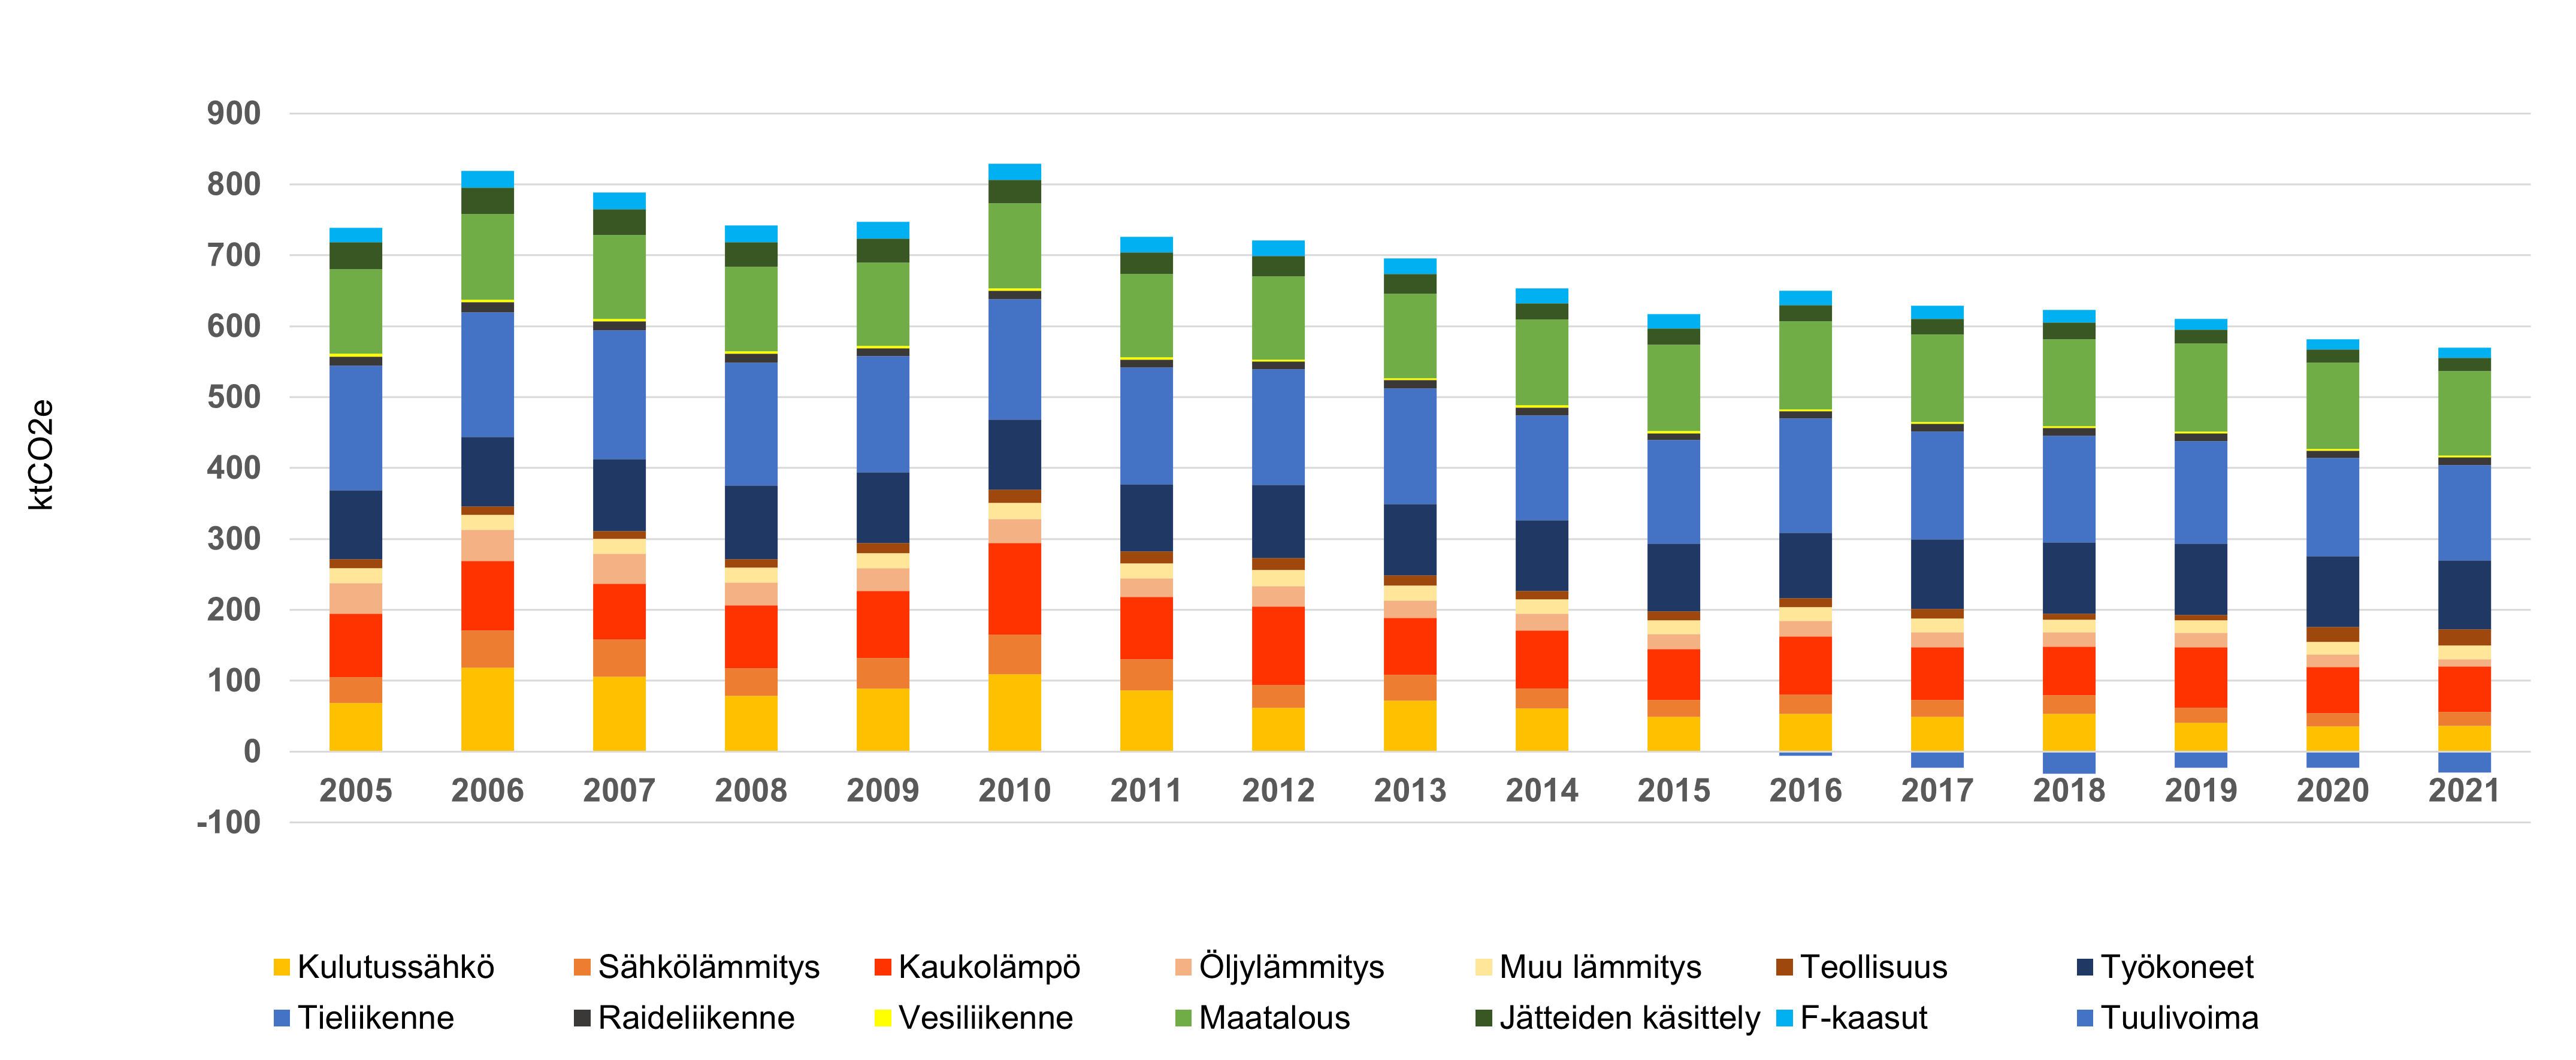 Pylväskaavio Kainuun kasvihuonekaasupäästöjen kehityksestä vuodesta 2005 vuoden 2021 ennakkotietoihin. 